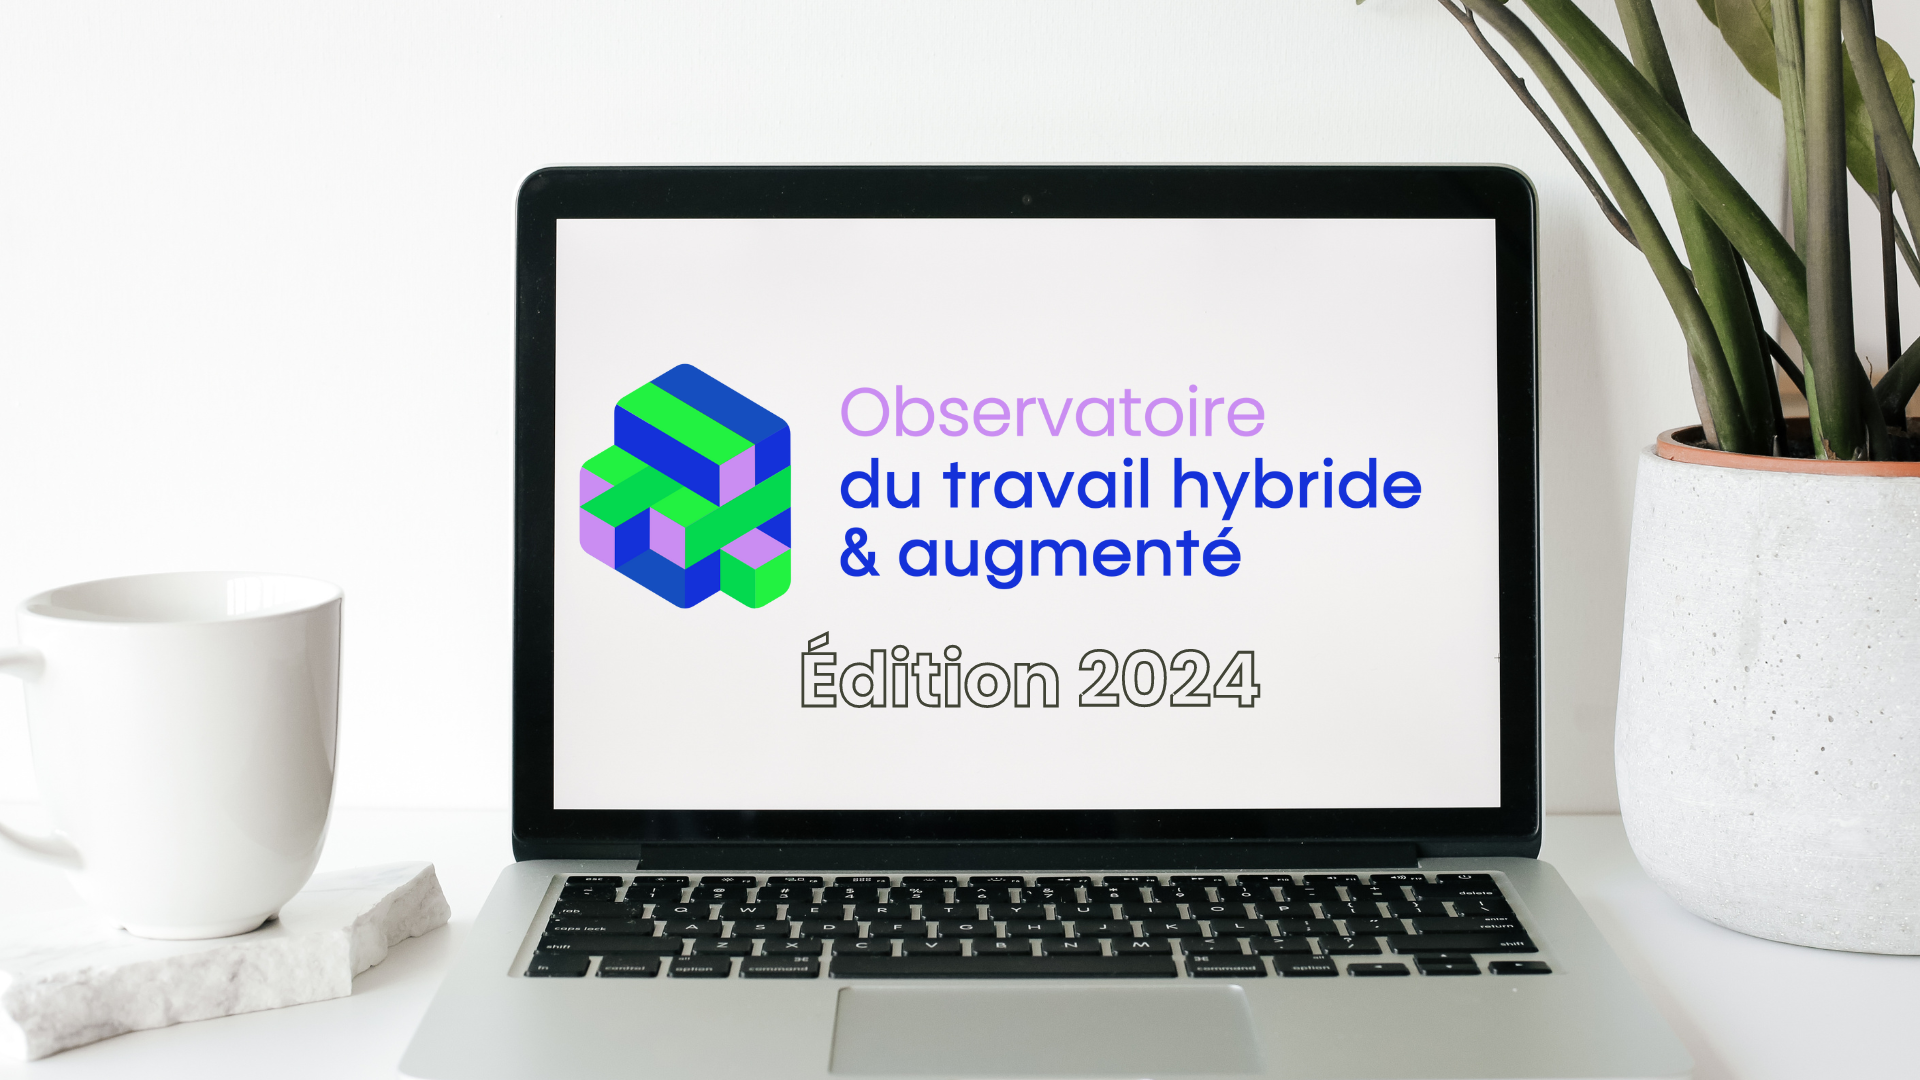 Observatoire du travail hybride et augmenté logo